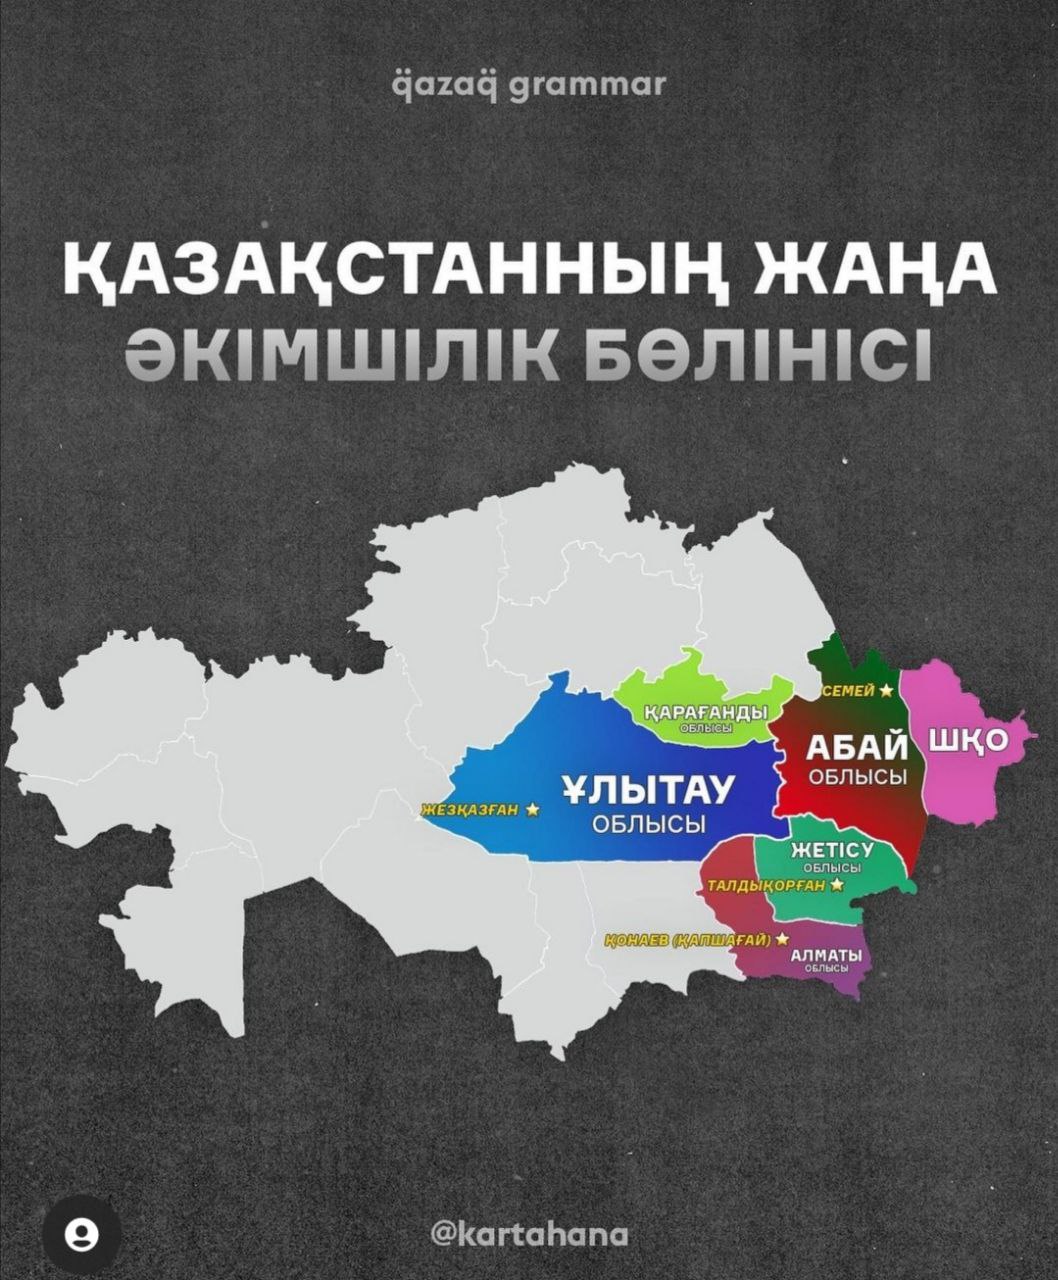 Новое административное деление Казахстана. Фото Qazaq grammar и Kartahana